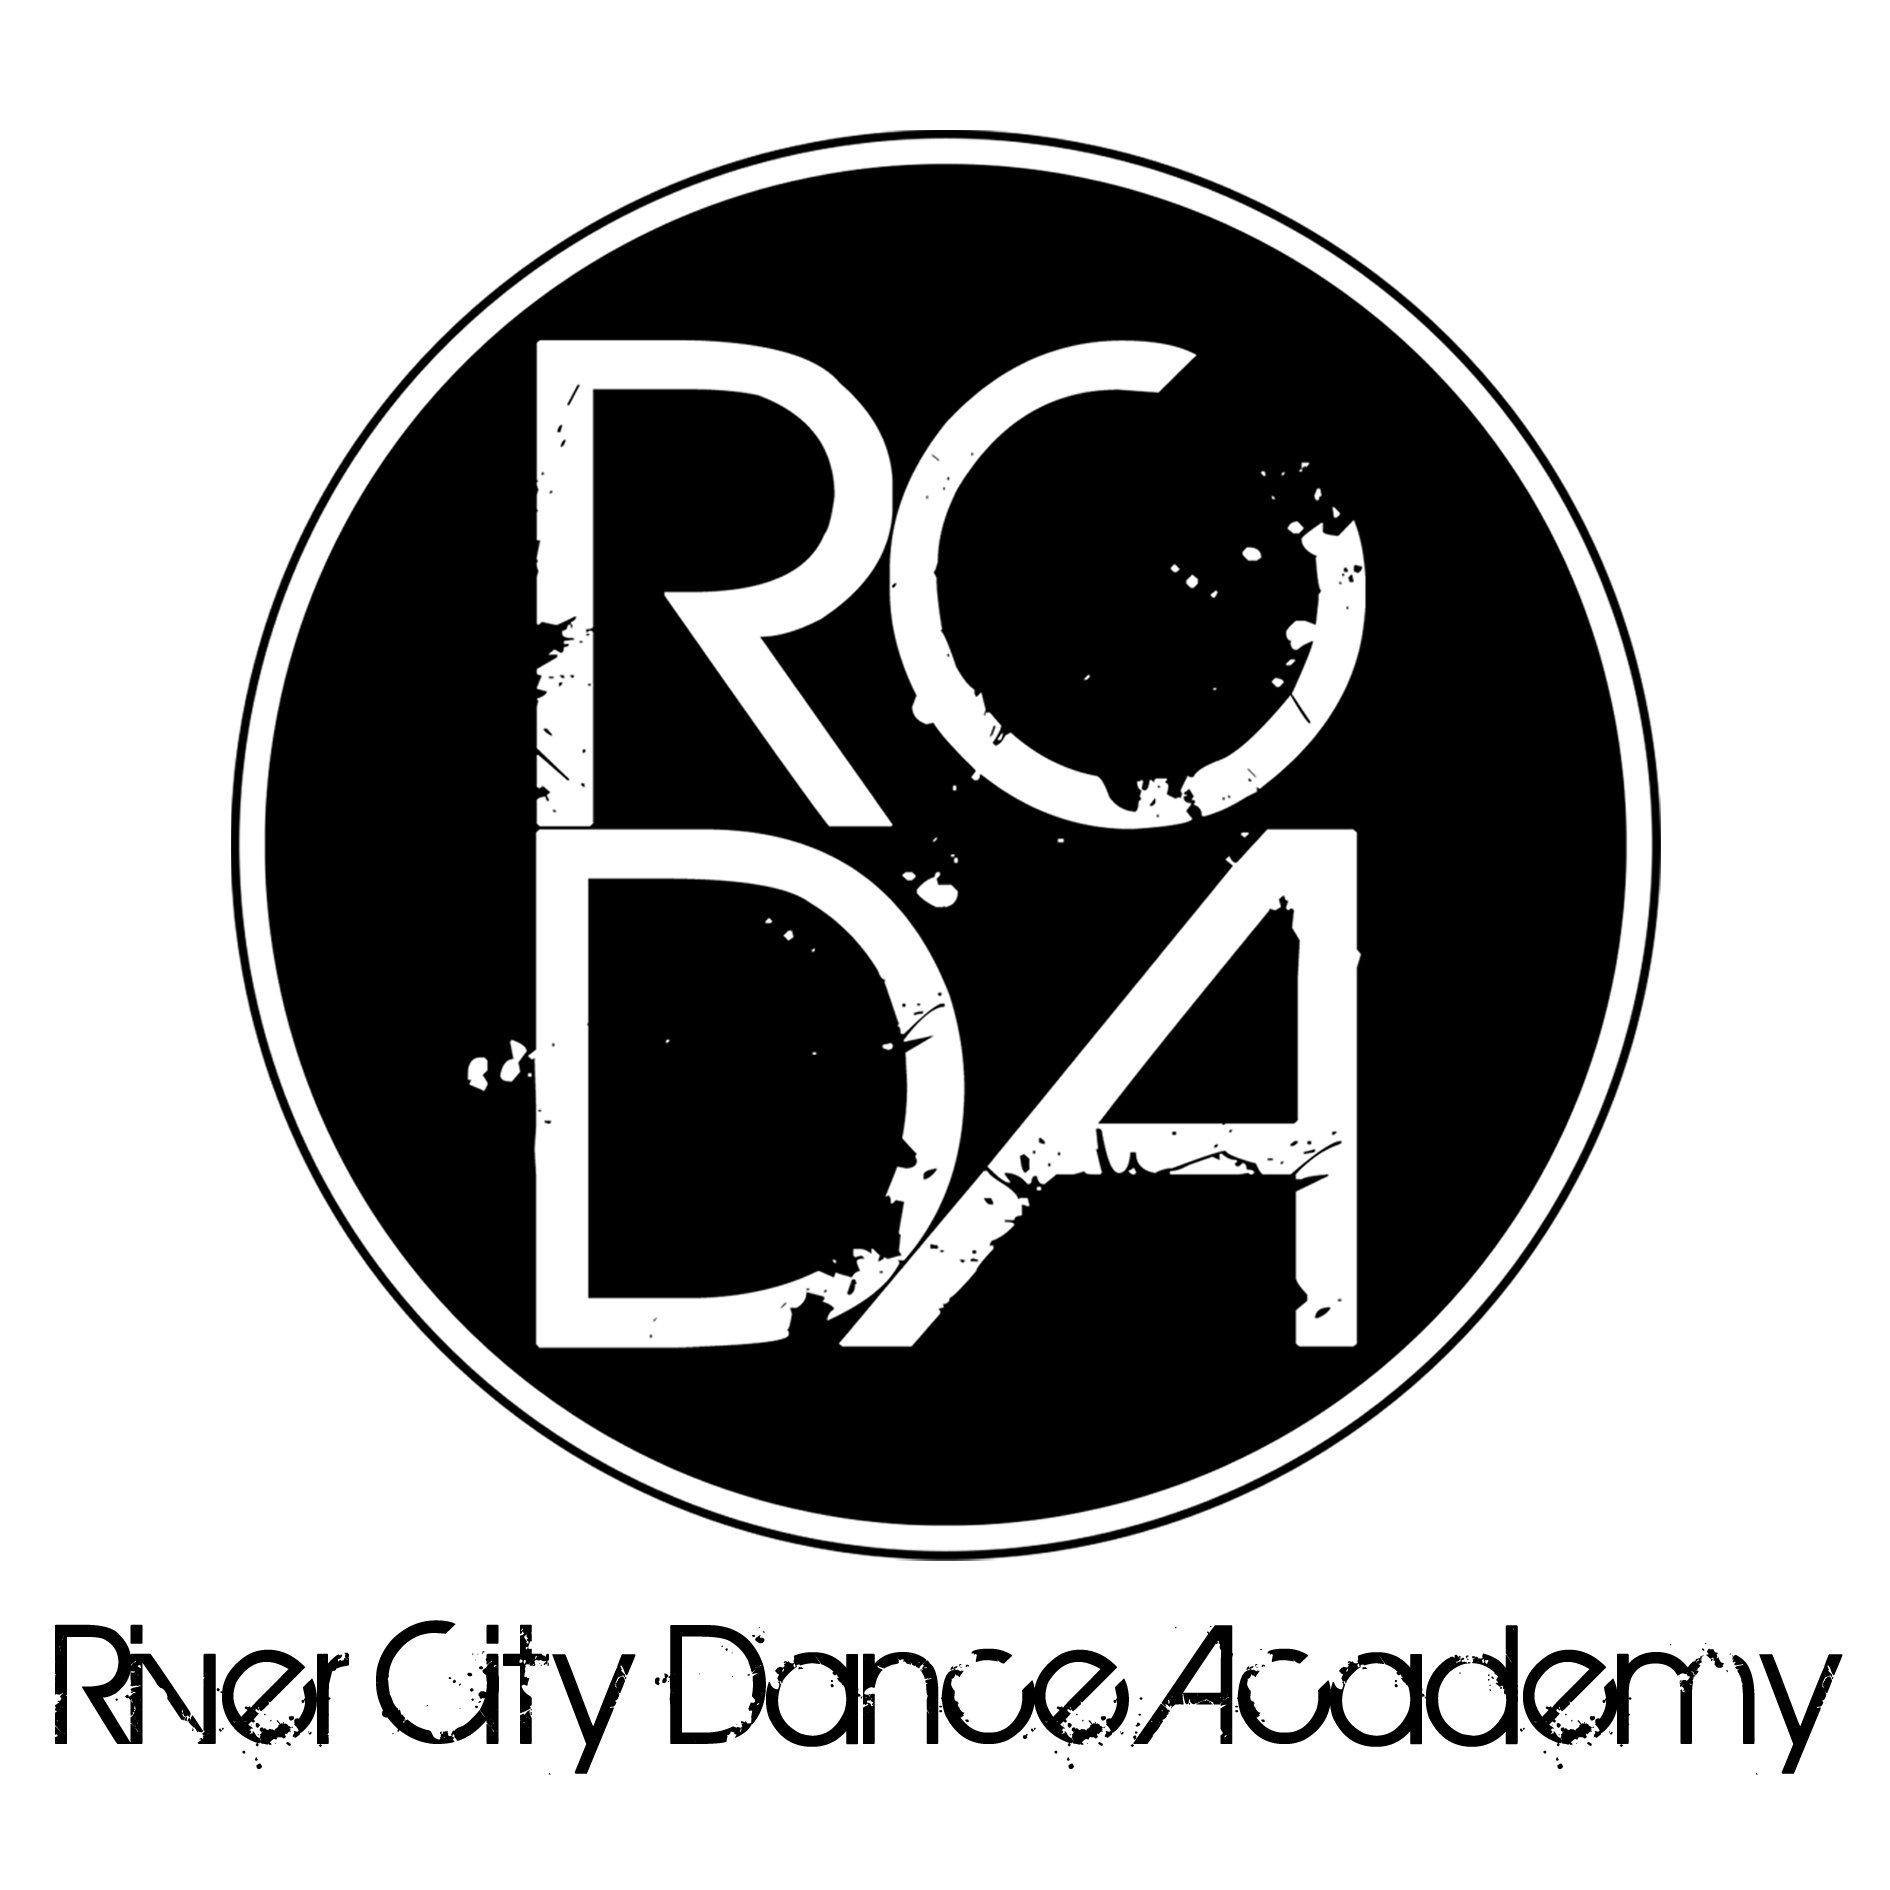 RCDA - Black Circle Logo - River City Dance Academy.jpg